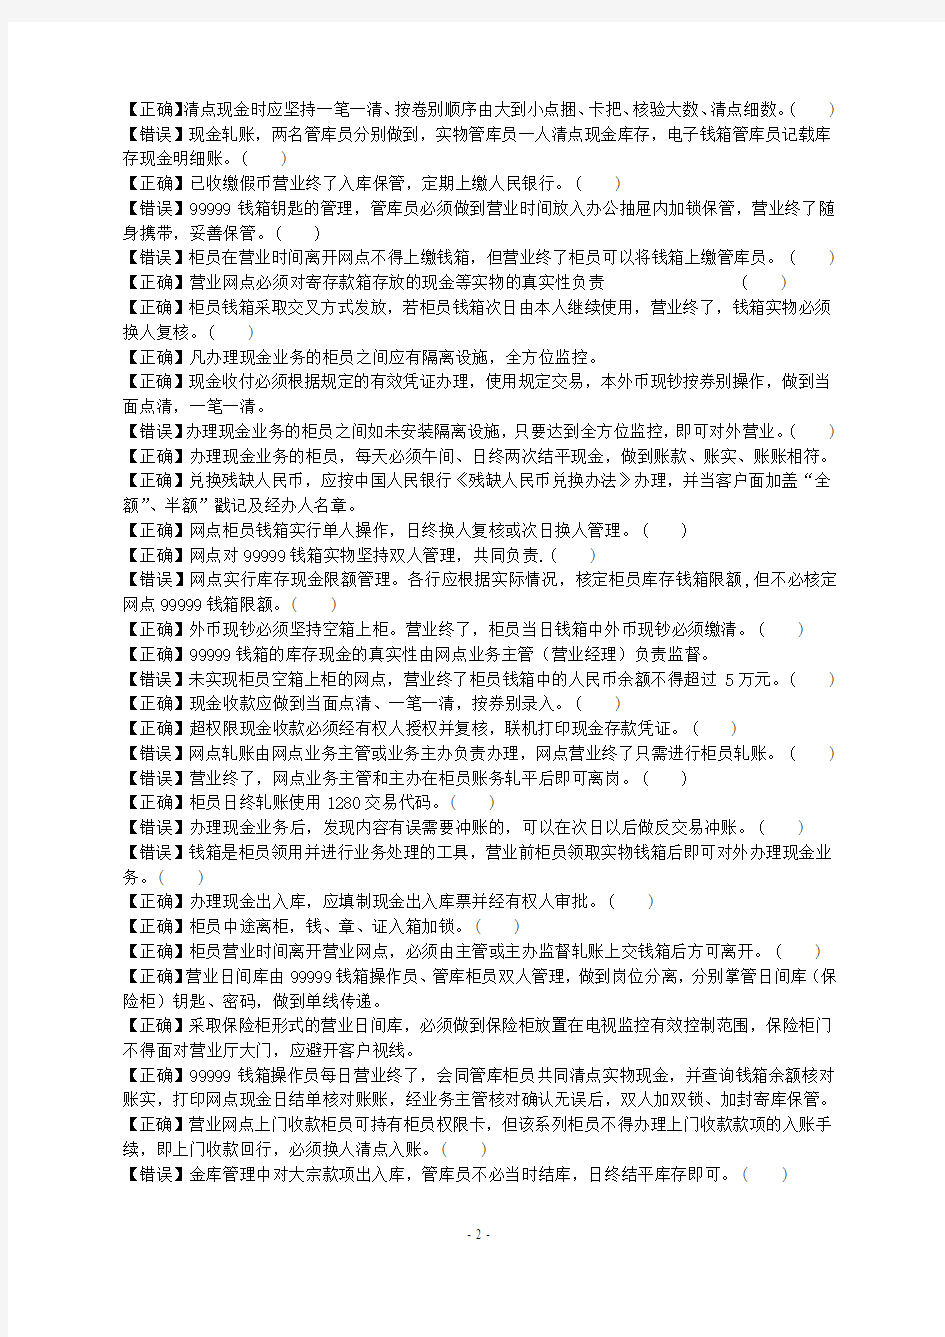 中国工商银行河南省分行综合柜员上岗资格认定业务考试题库(2007年版修改)